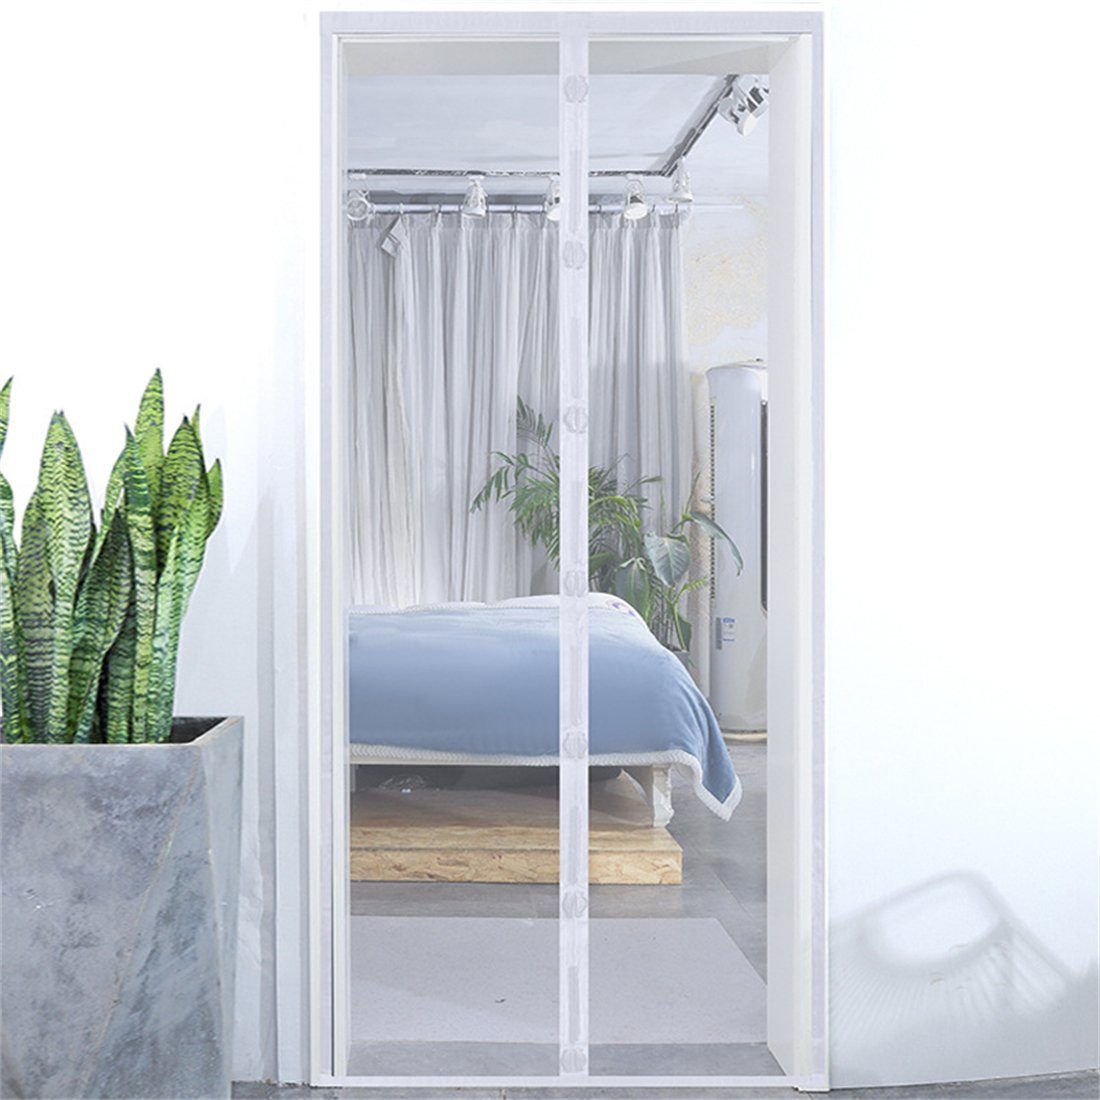 Installation ohne Insektenschutz-Tür Bohren YOOdy~ Weiß Fliegengitter Einfache Tür Insektenschutz